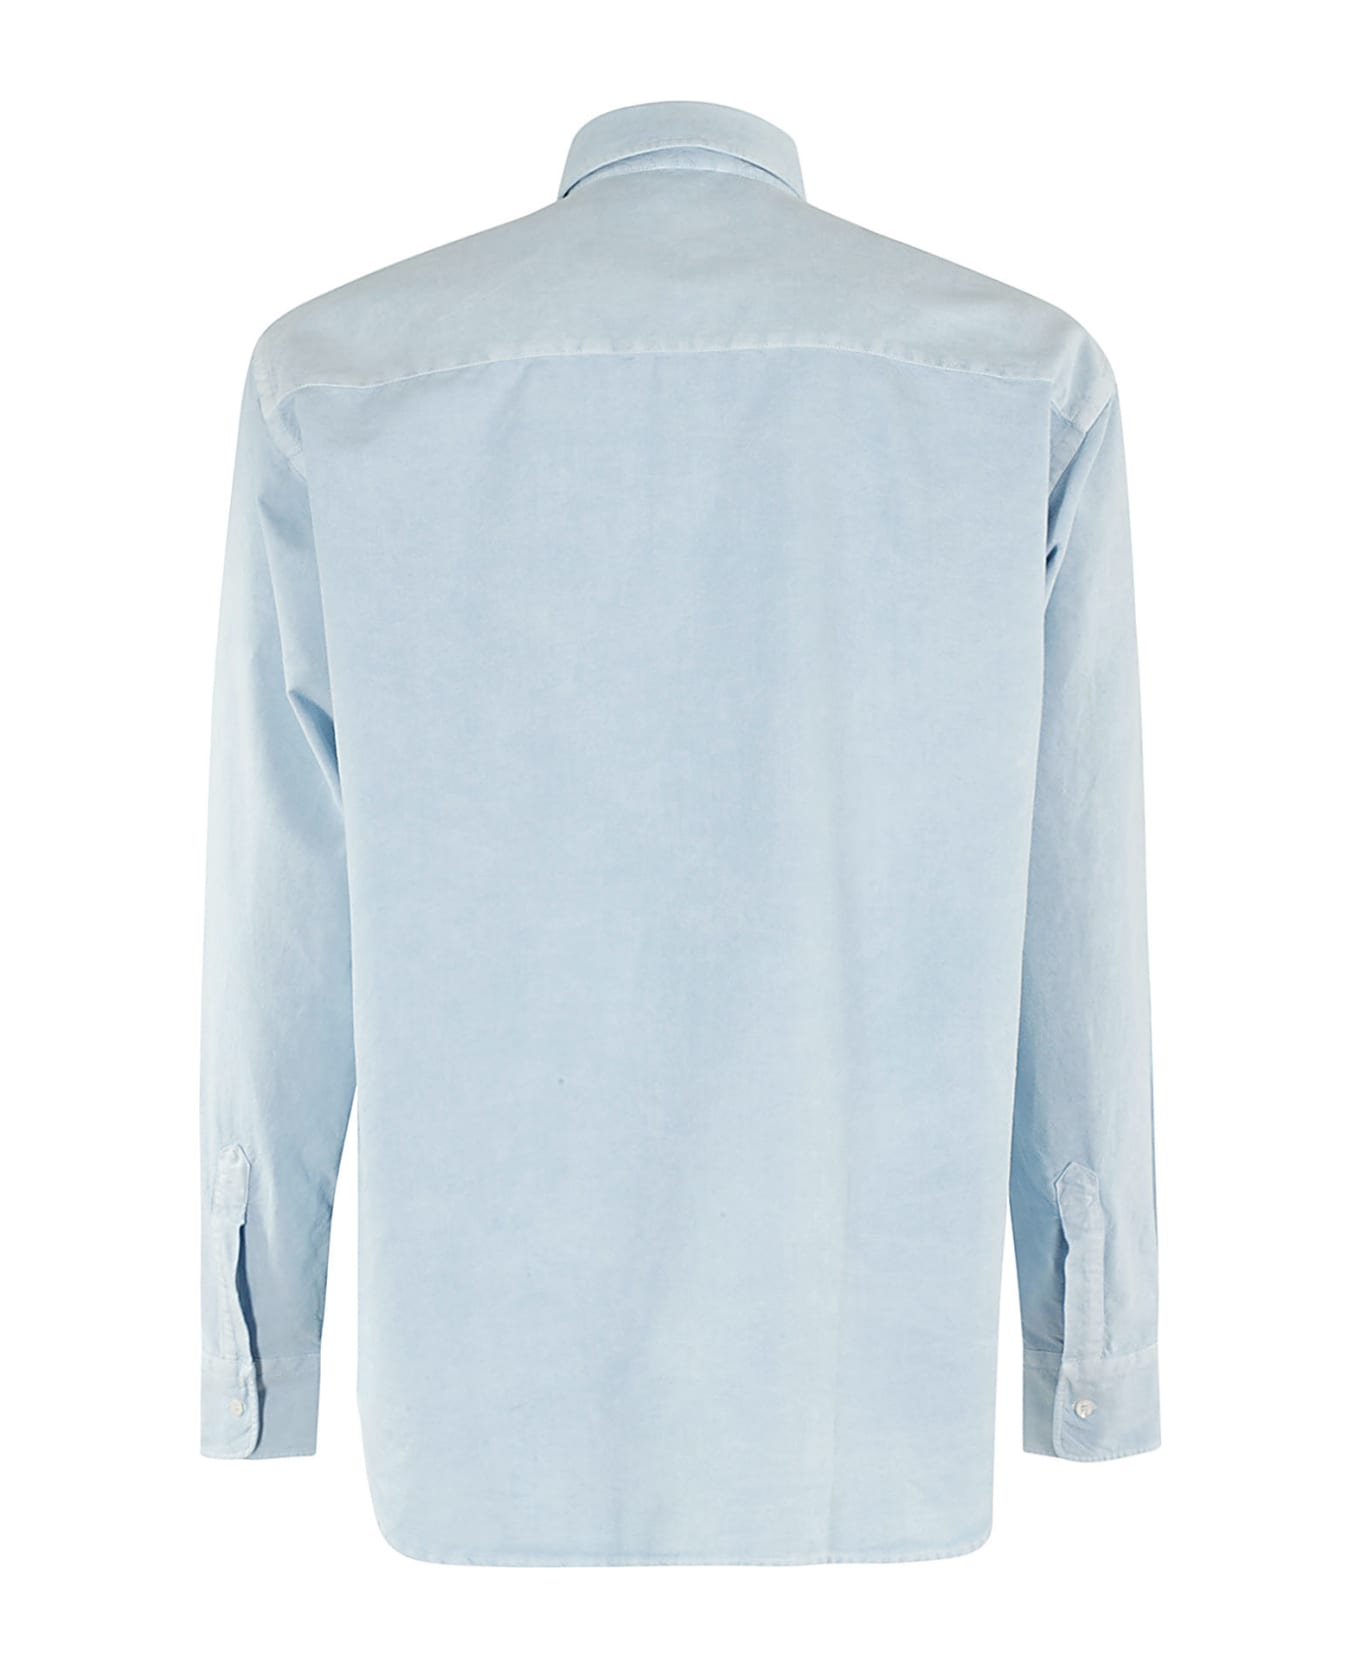 Aspesi Cotton Oxford Shirt - Azzurro